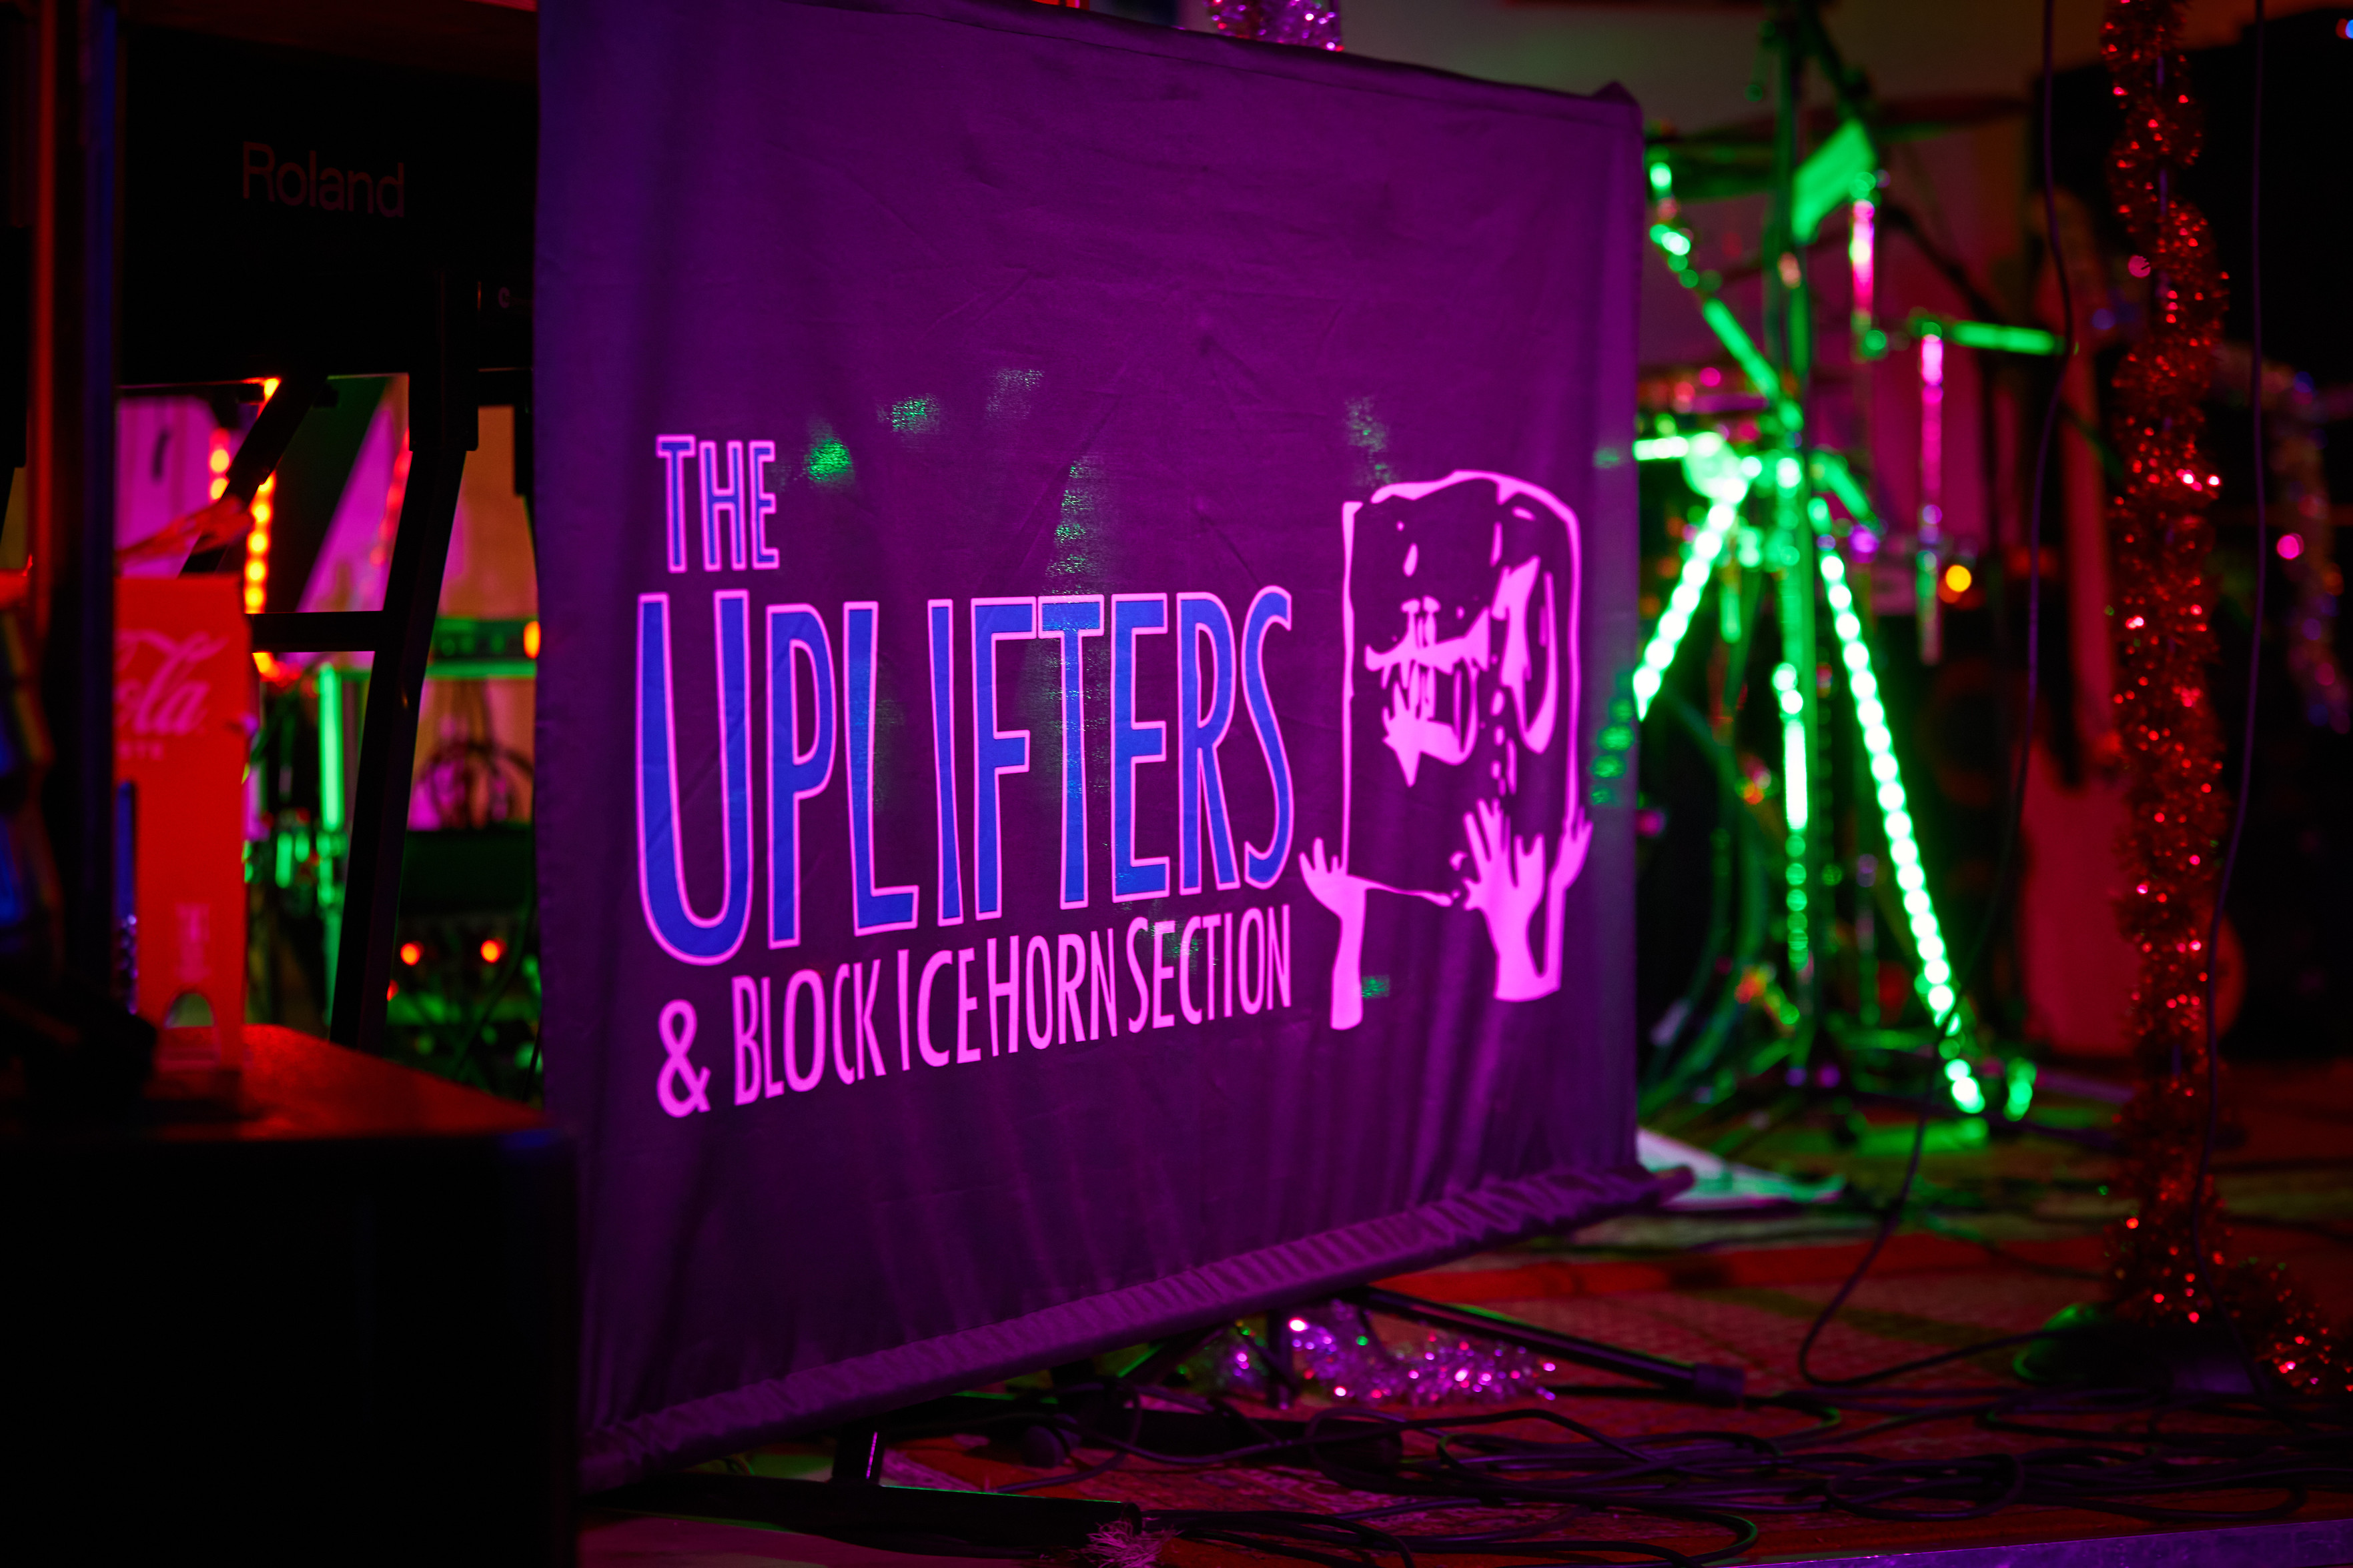 Ein Foto von der Bühne unseres Konzertes am letzten Samstag. Man sieht unser Banner was am Keyboardständer hängt.

The Uplifters & Block Ice Horn Section